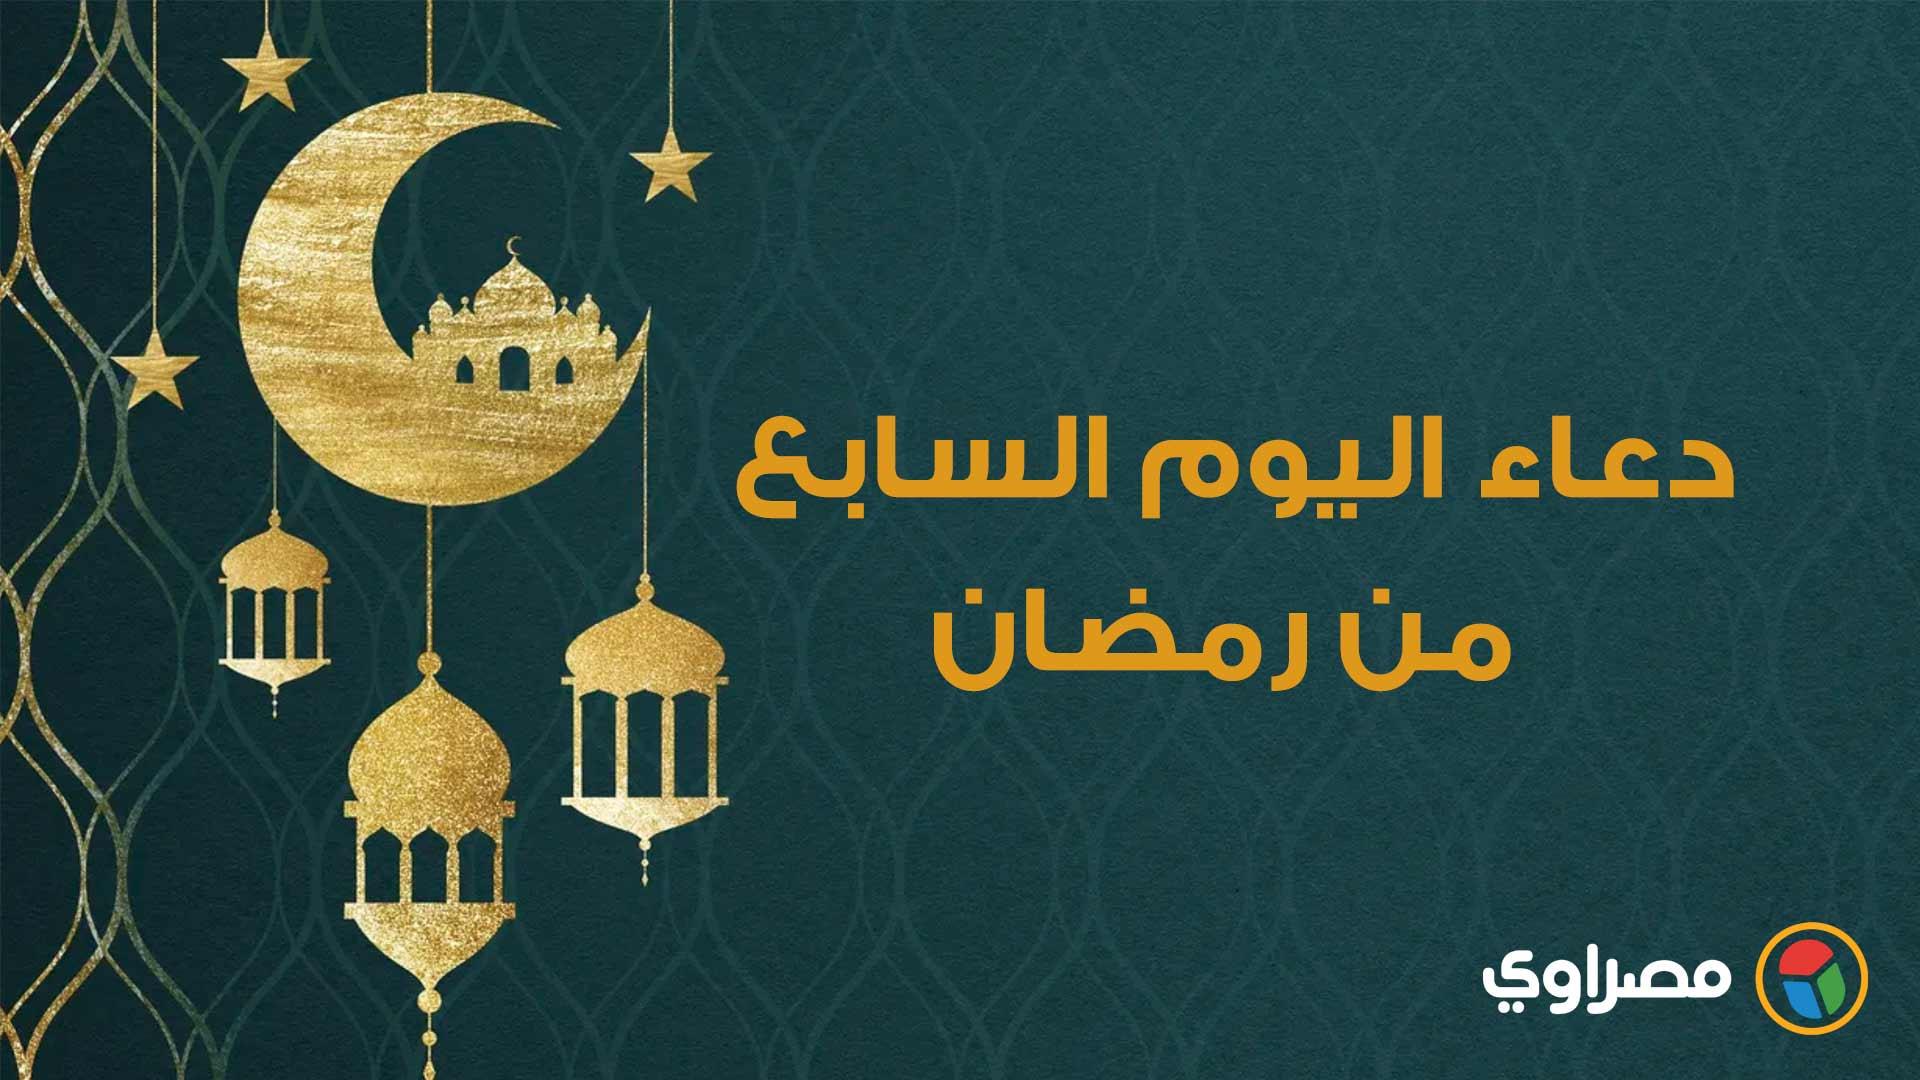 دعاء اليوم السابع من رمضان